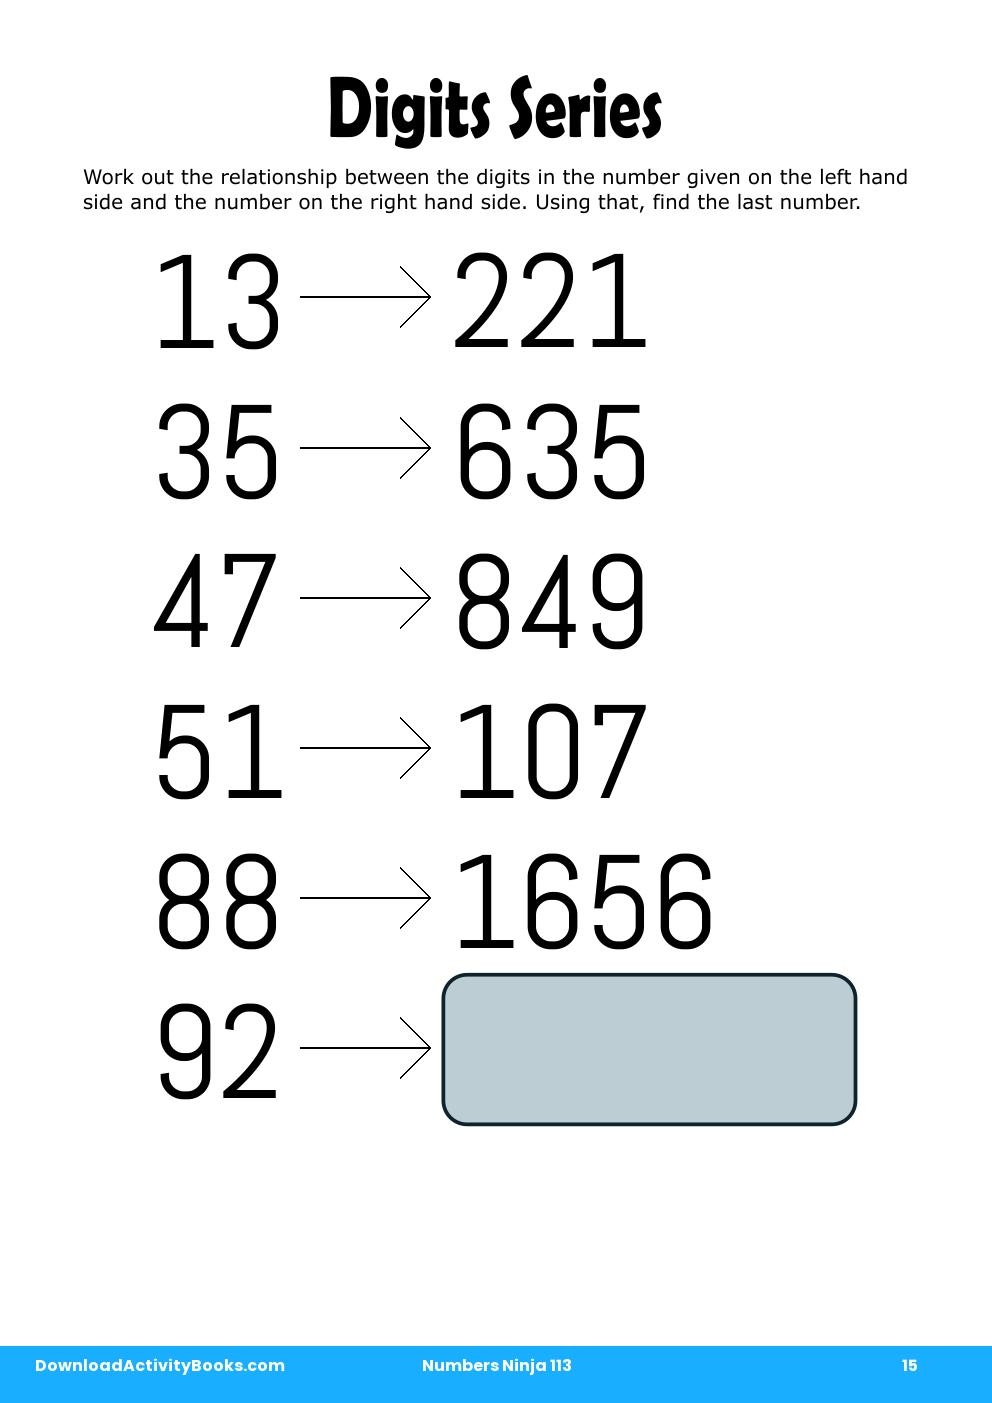 Digits Series in Numbers Ninja 113